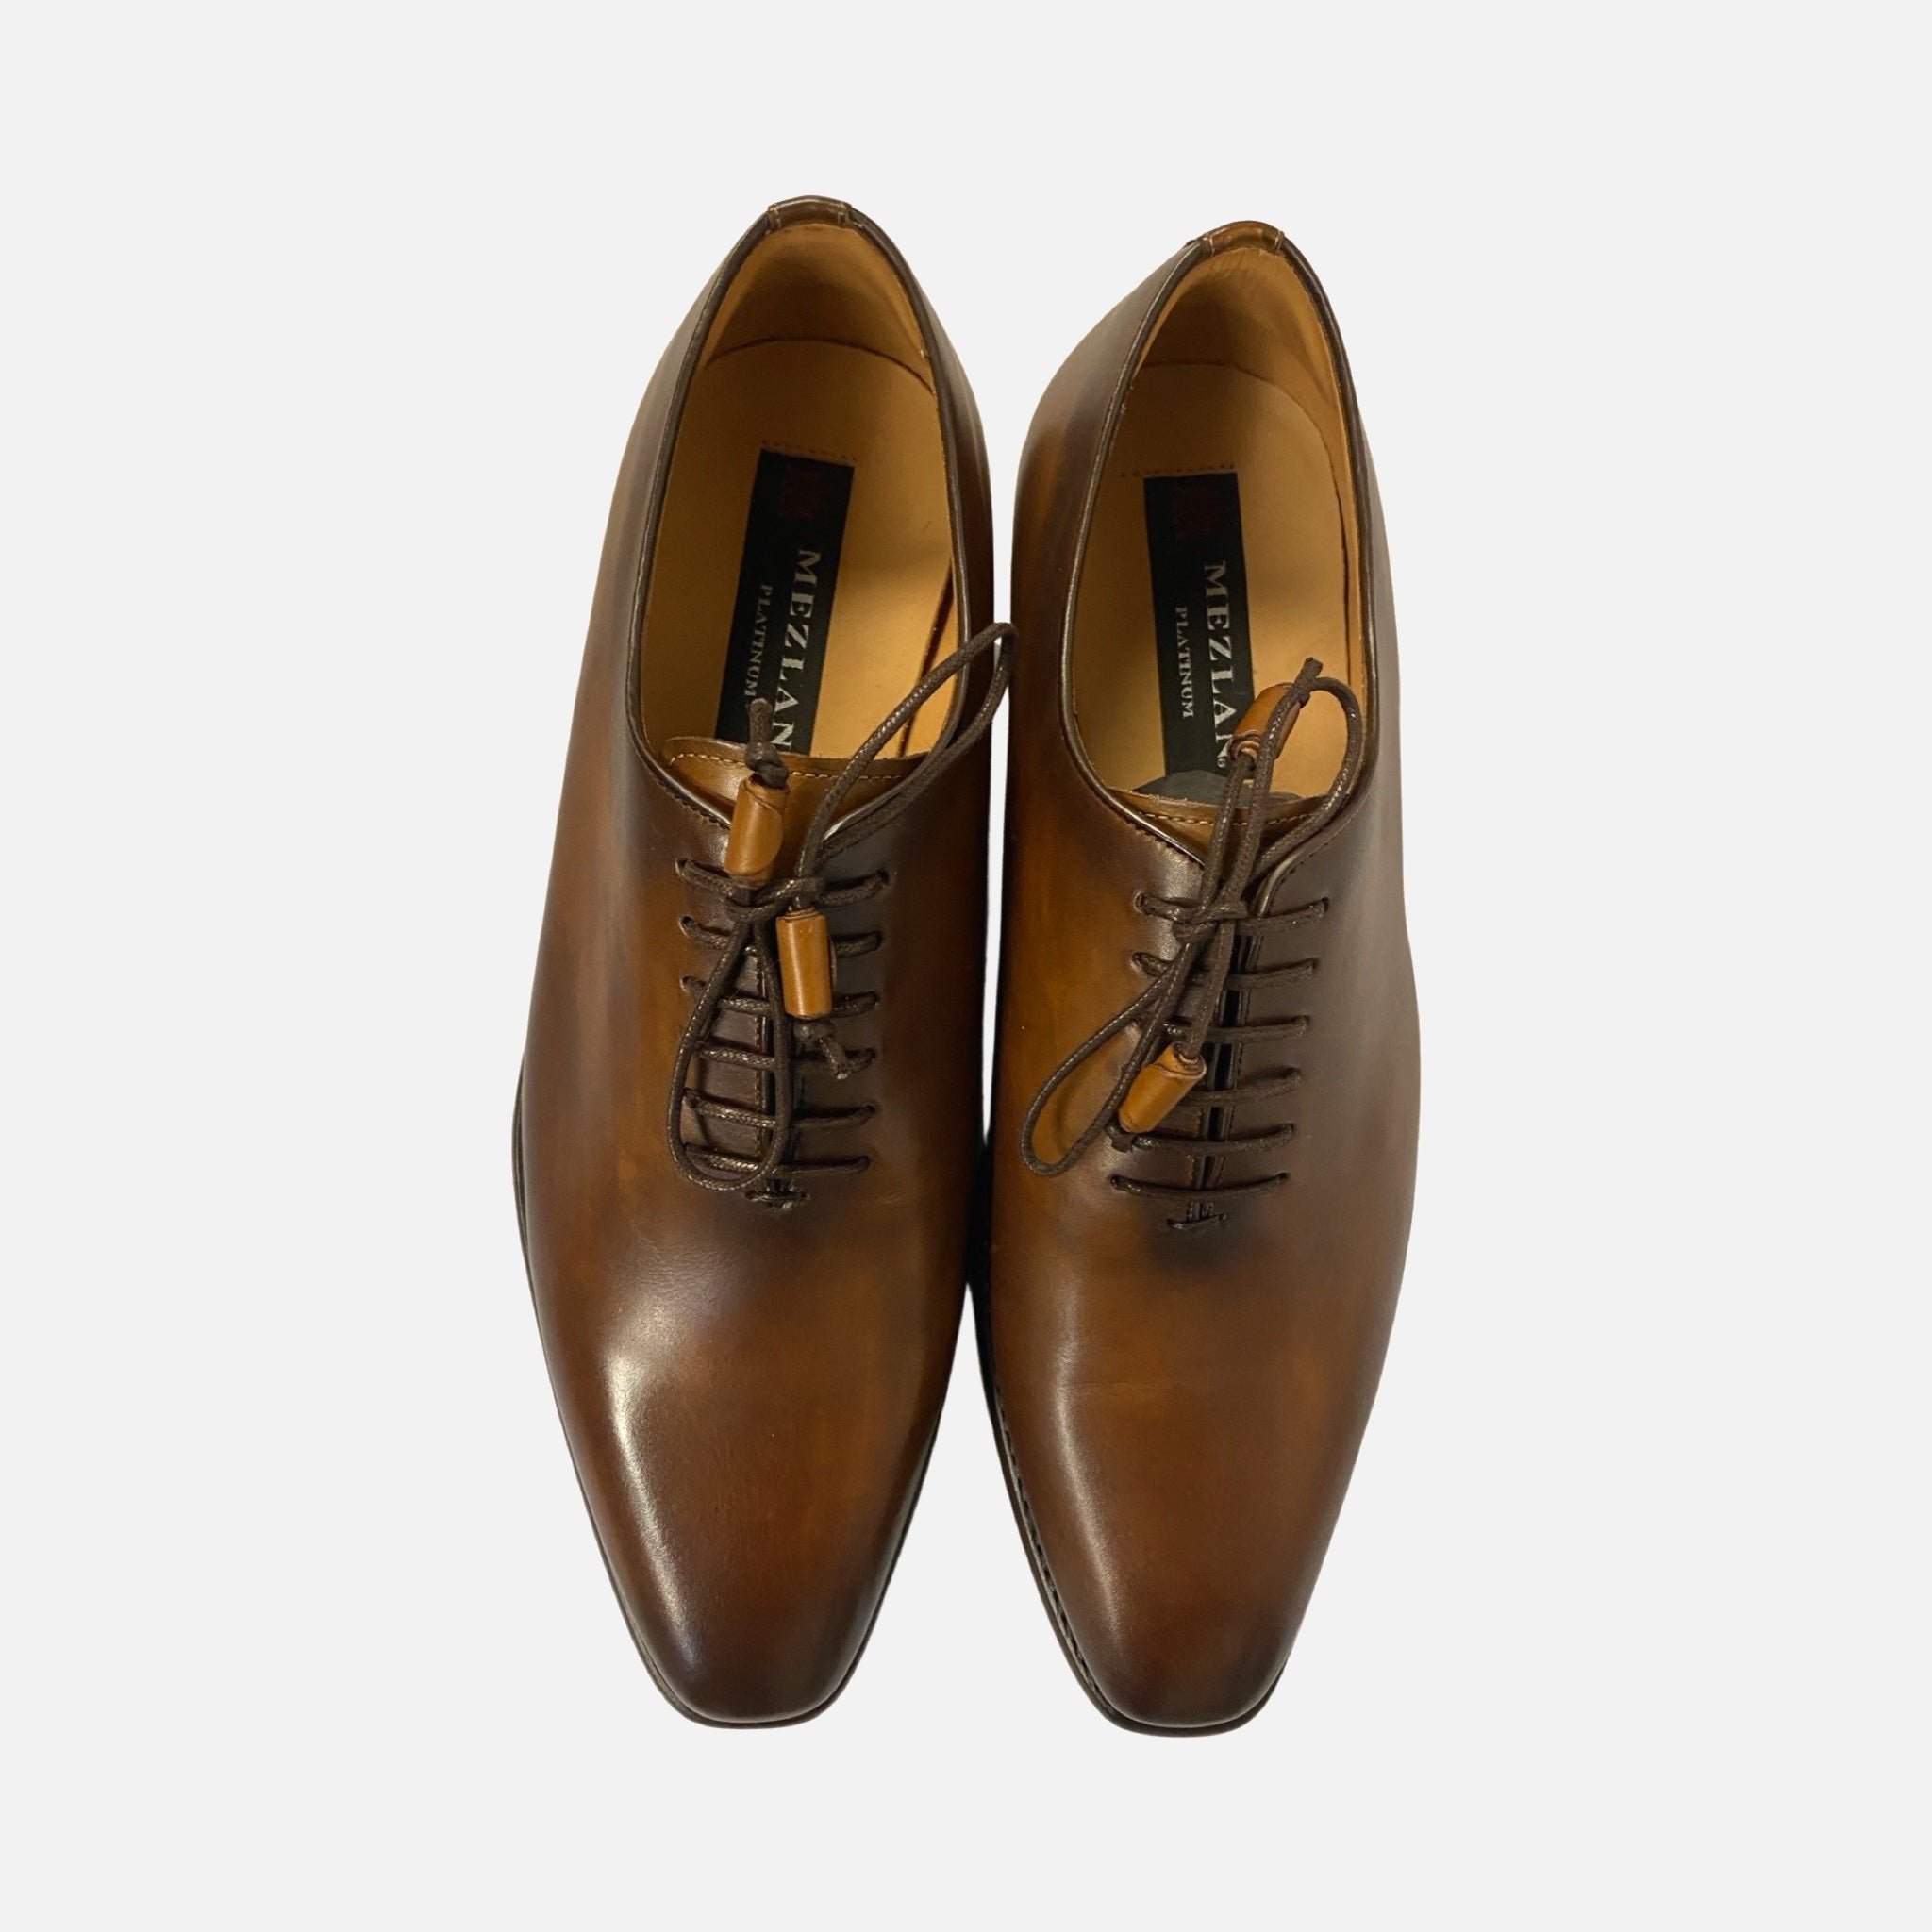 Mens brown shoe made in spain